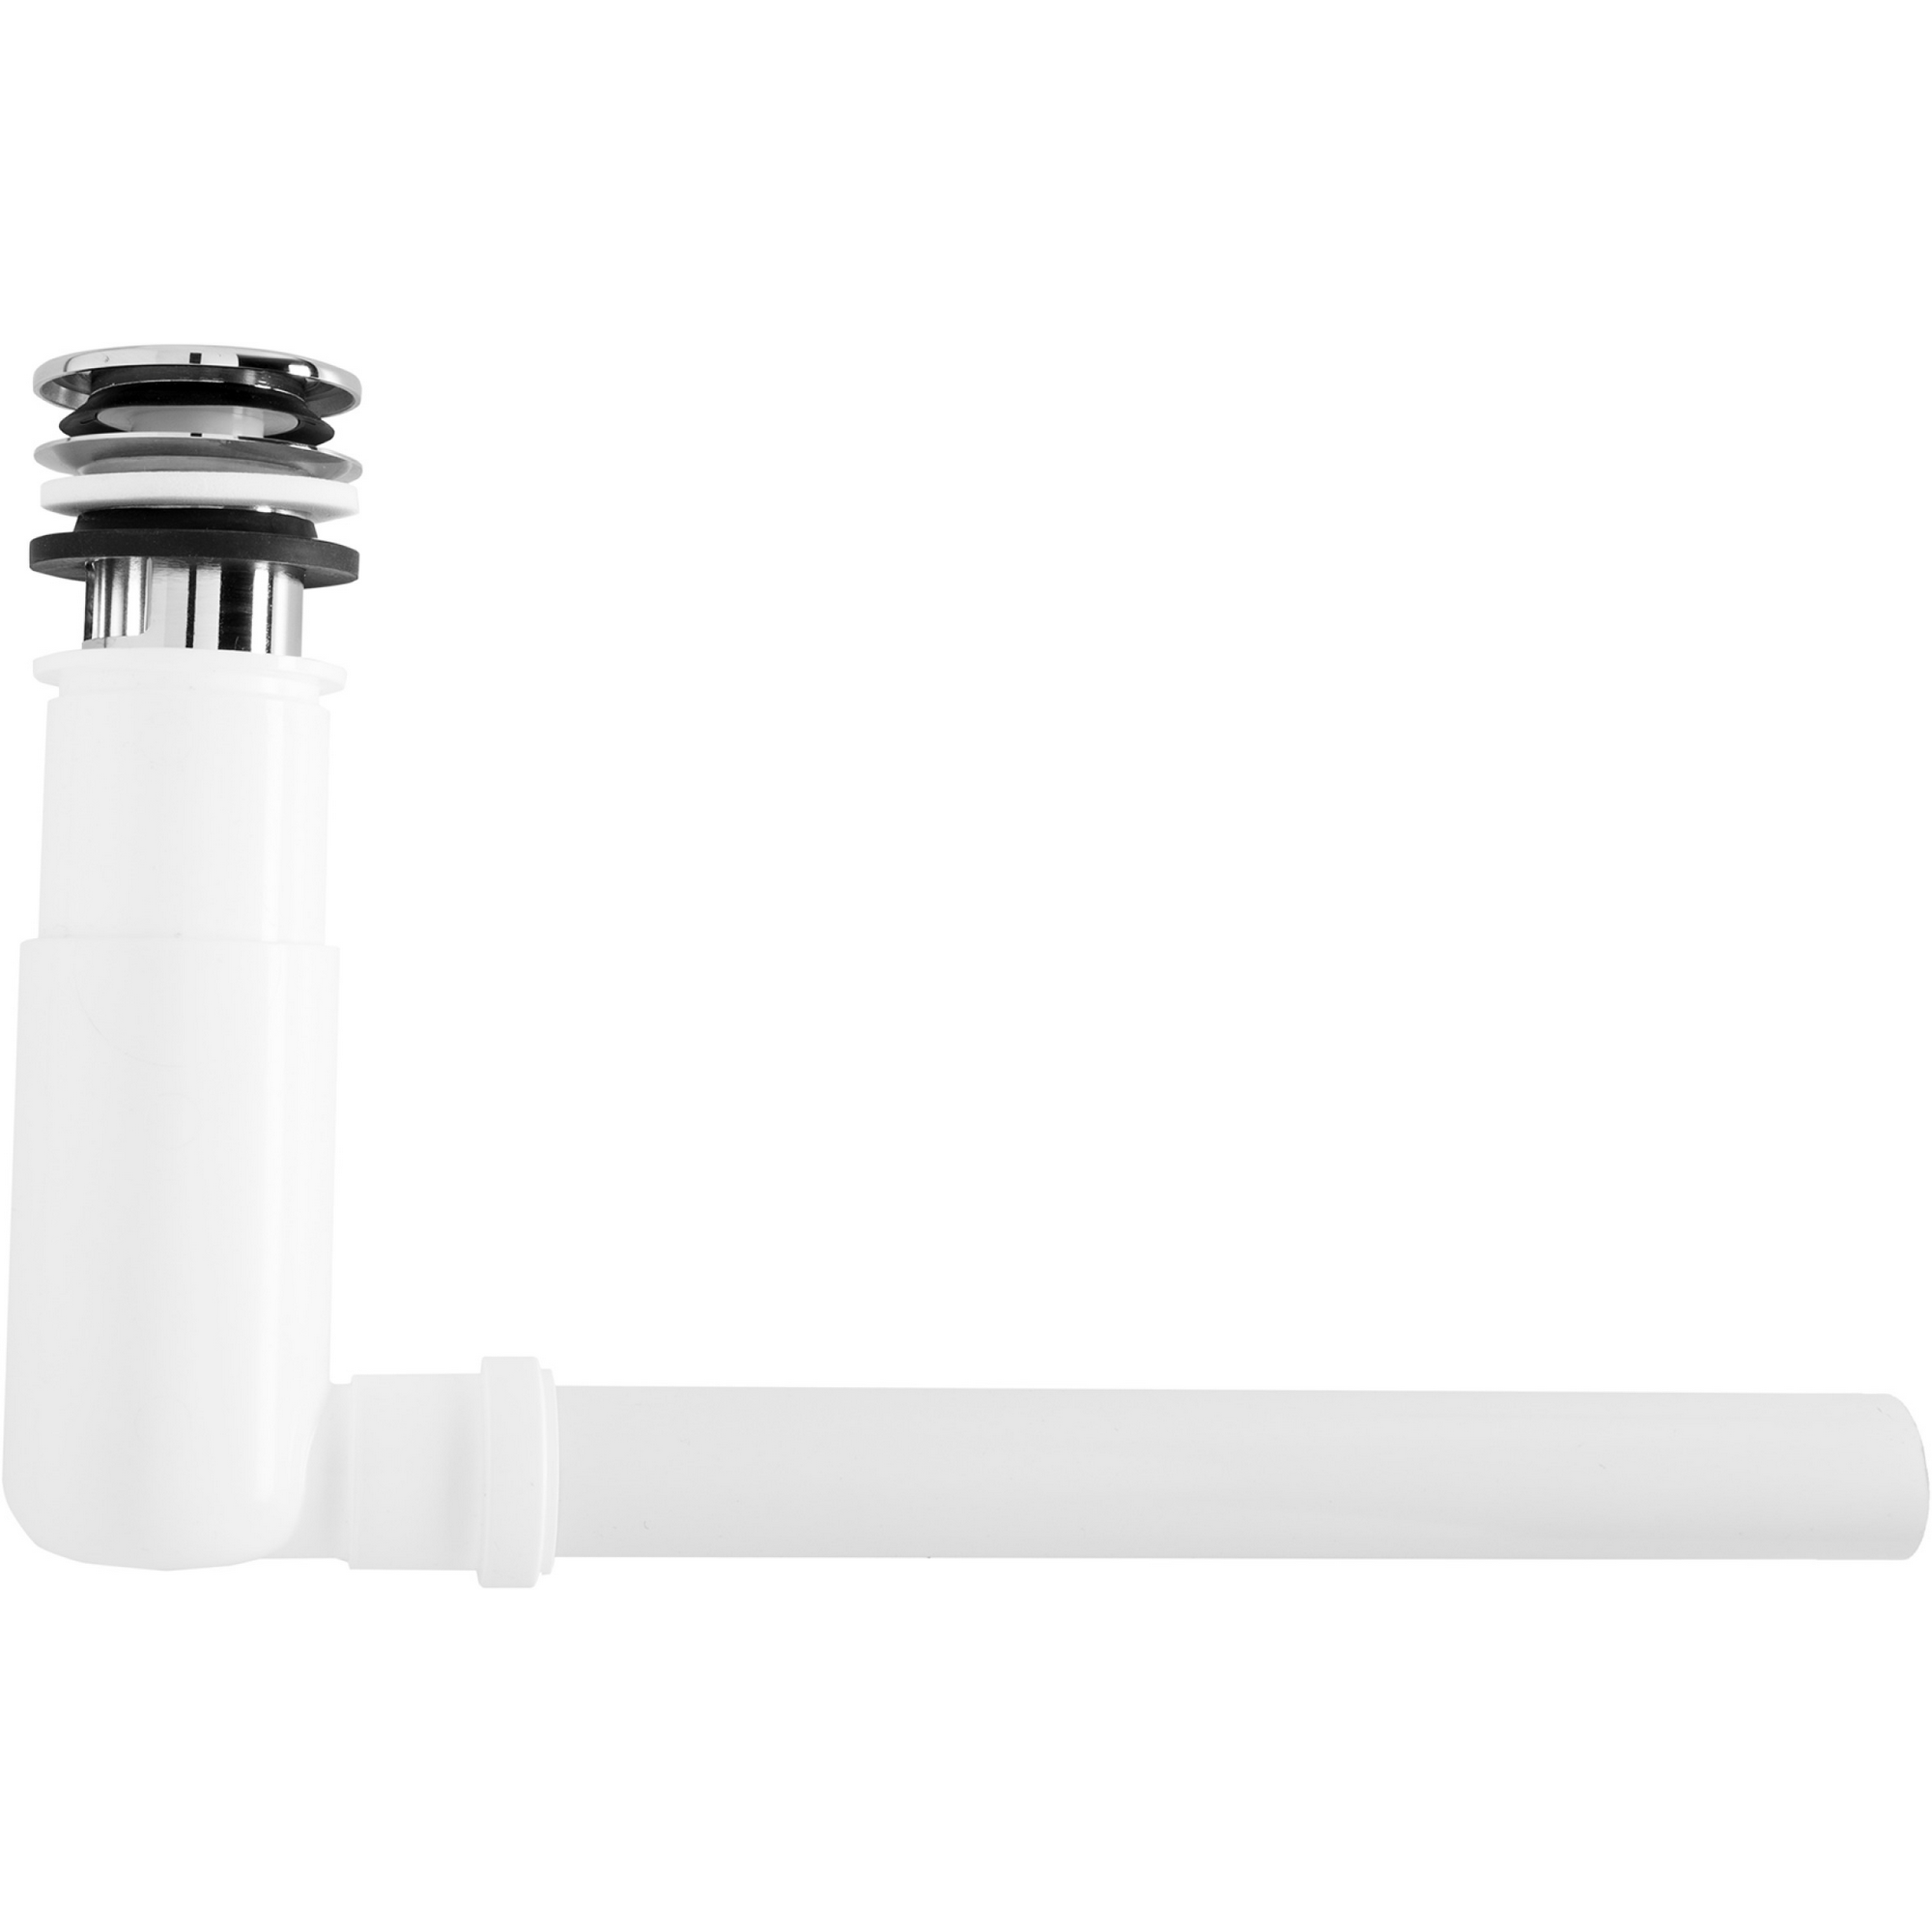 Raumspar-Tassen-Geruchverschluss mit Easyclean 1 1/4" x Ø 60 mm + product picture